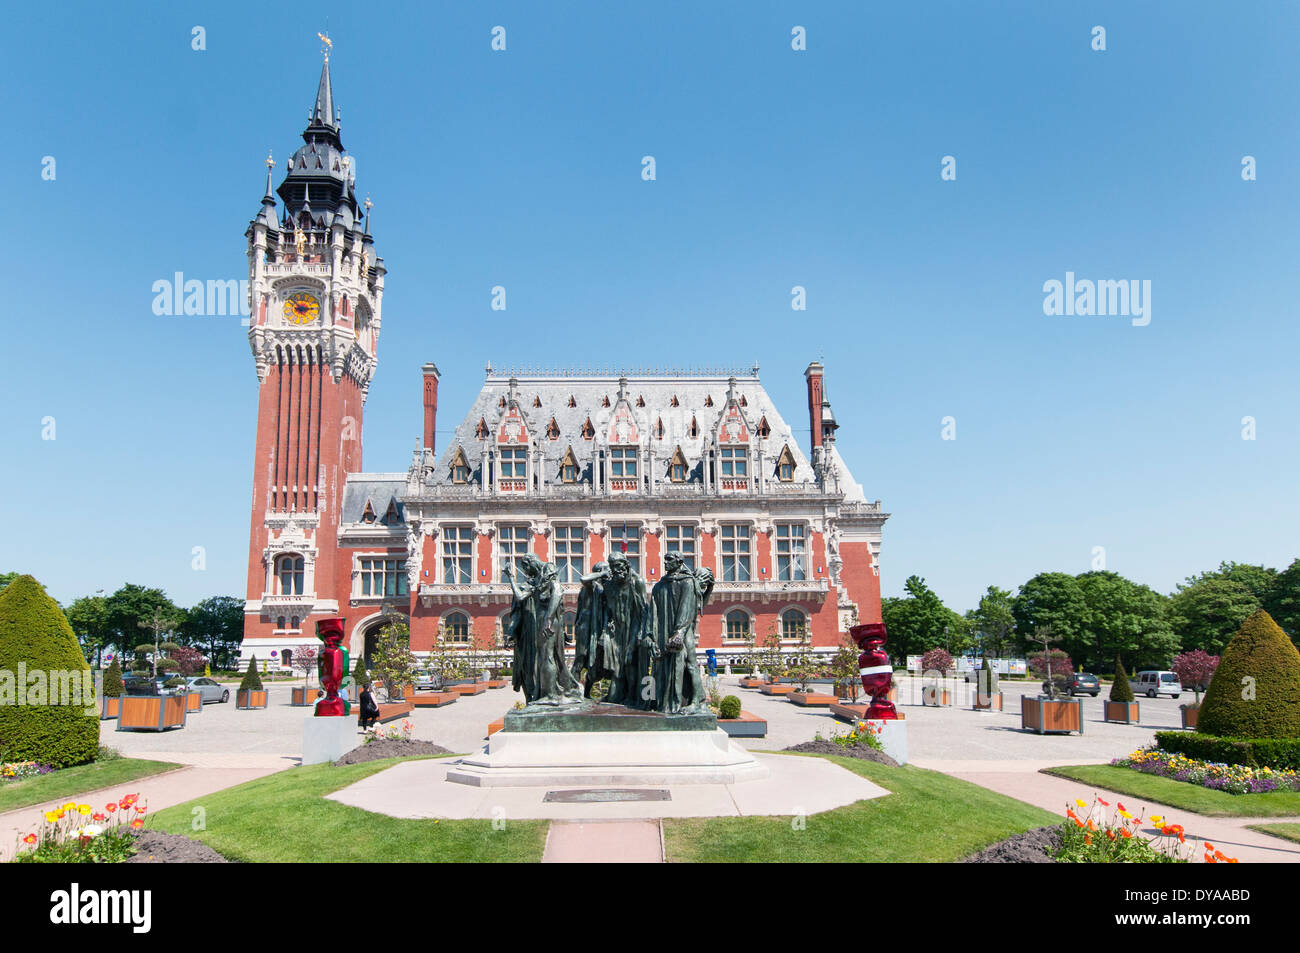 Frankreich, Calais. Die sechs Bürger von Calais von Rodin steht vor dem Rathaus und der Glockenturm, von Louis Debrouwer entworfen. Stockfoto